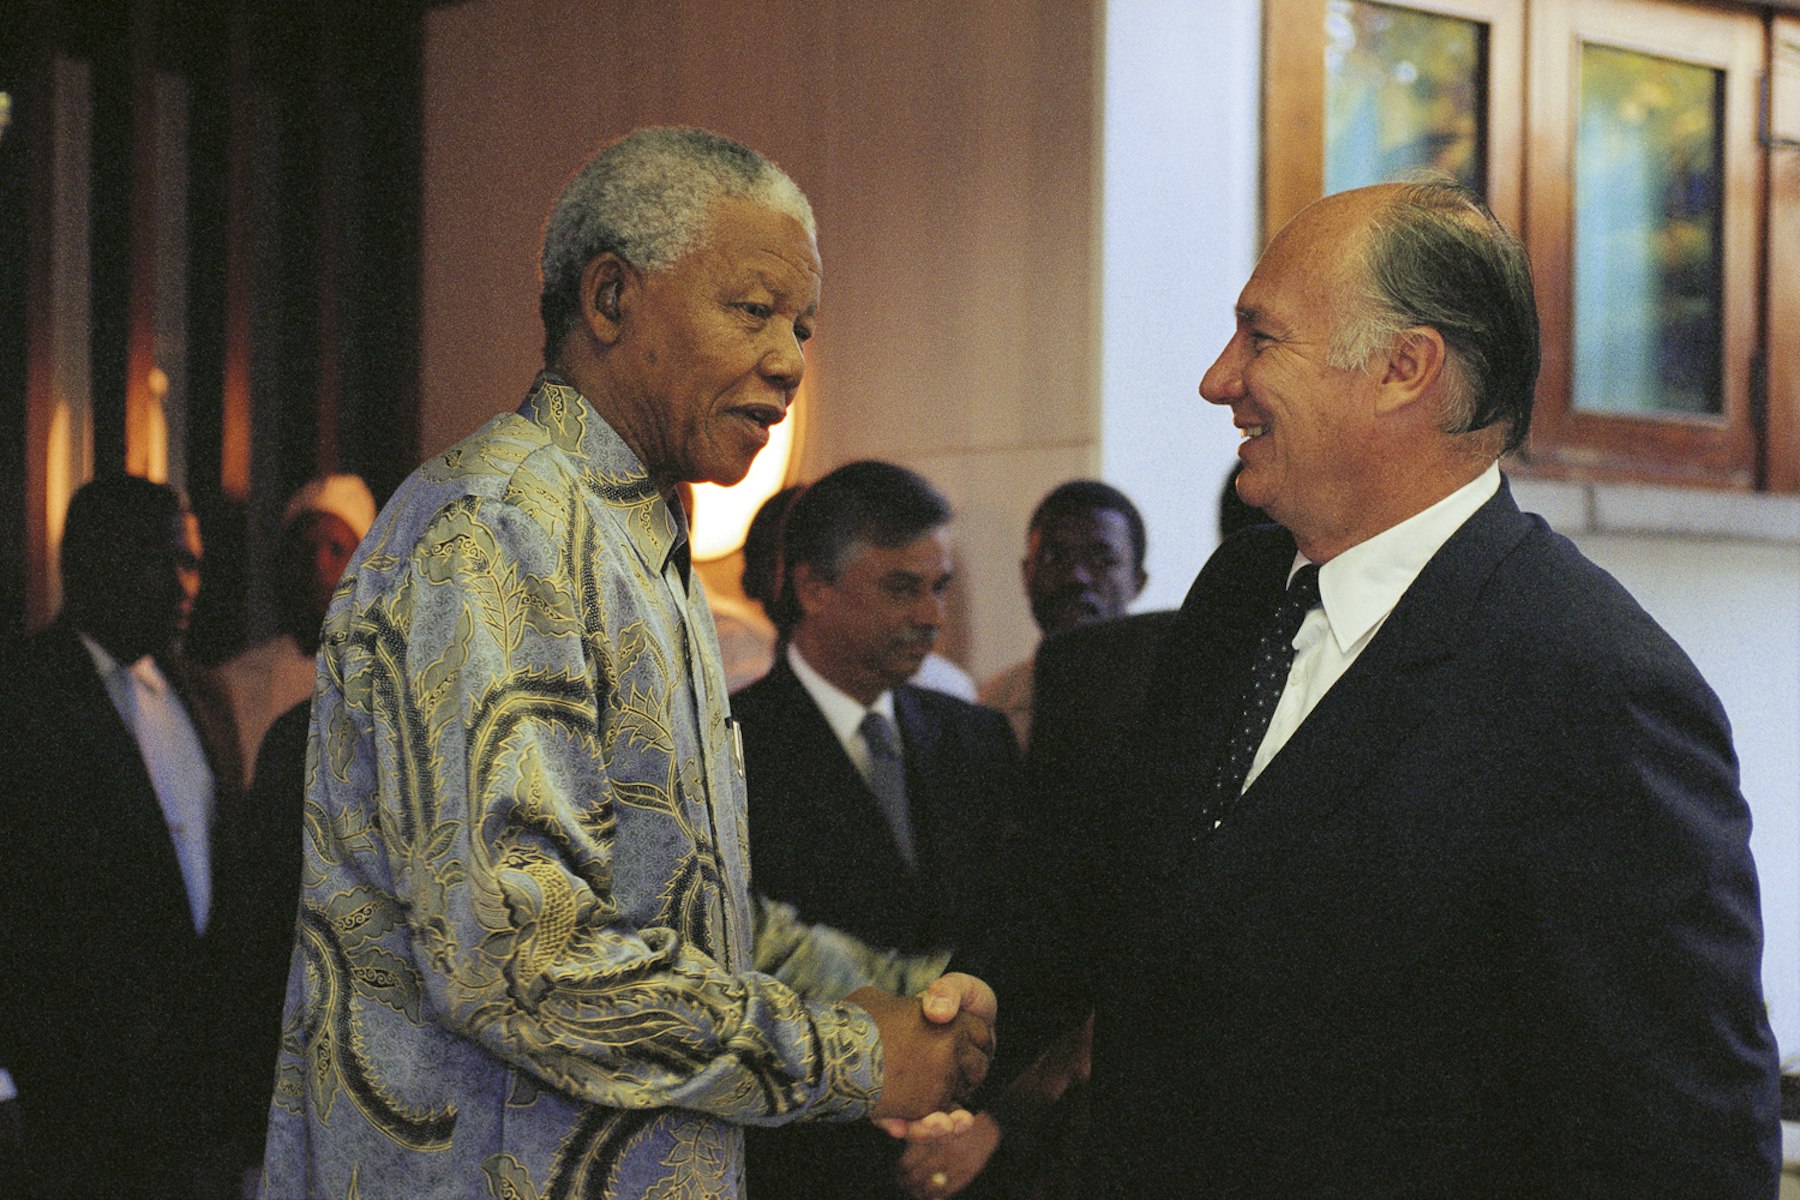 When Nelson Mandela visited Brazil